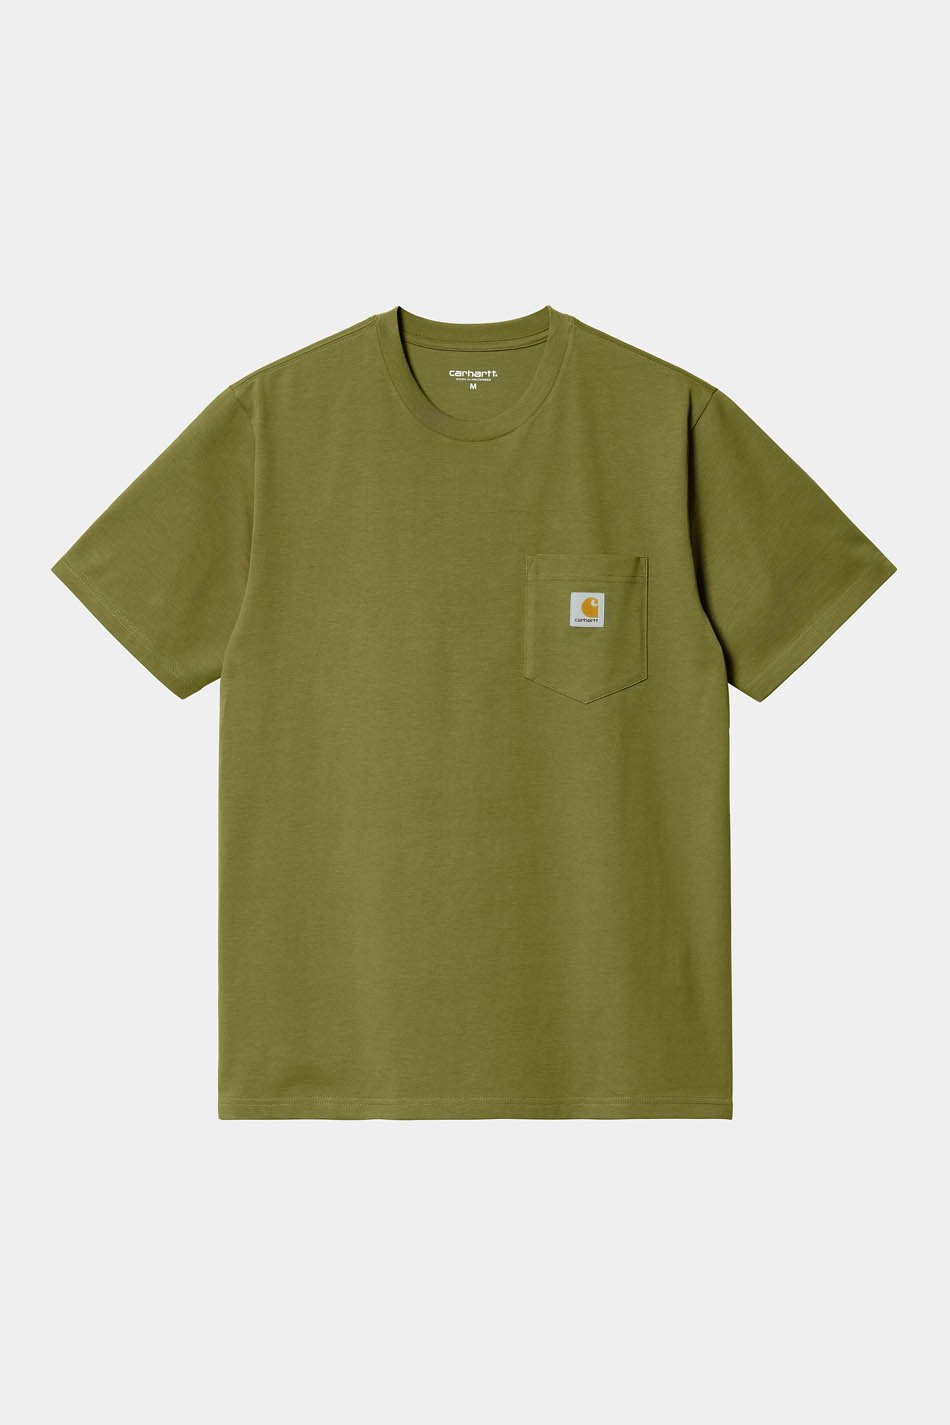 Carhartt WIP Pocket Kiwi T-Shirt